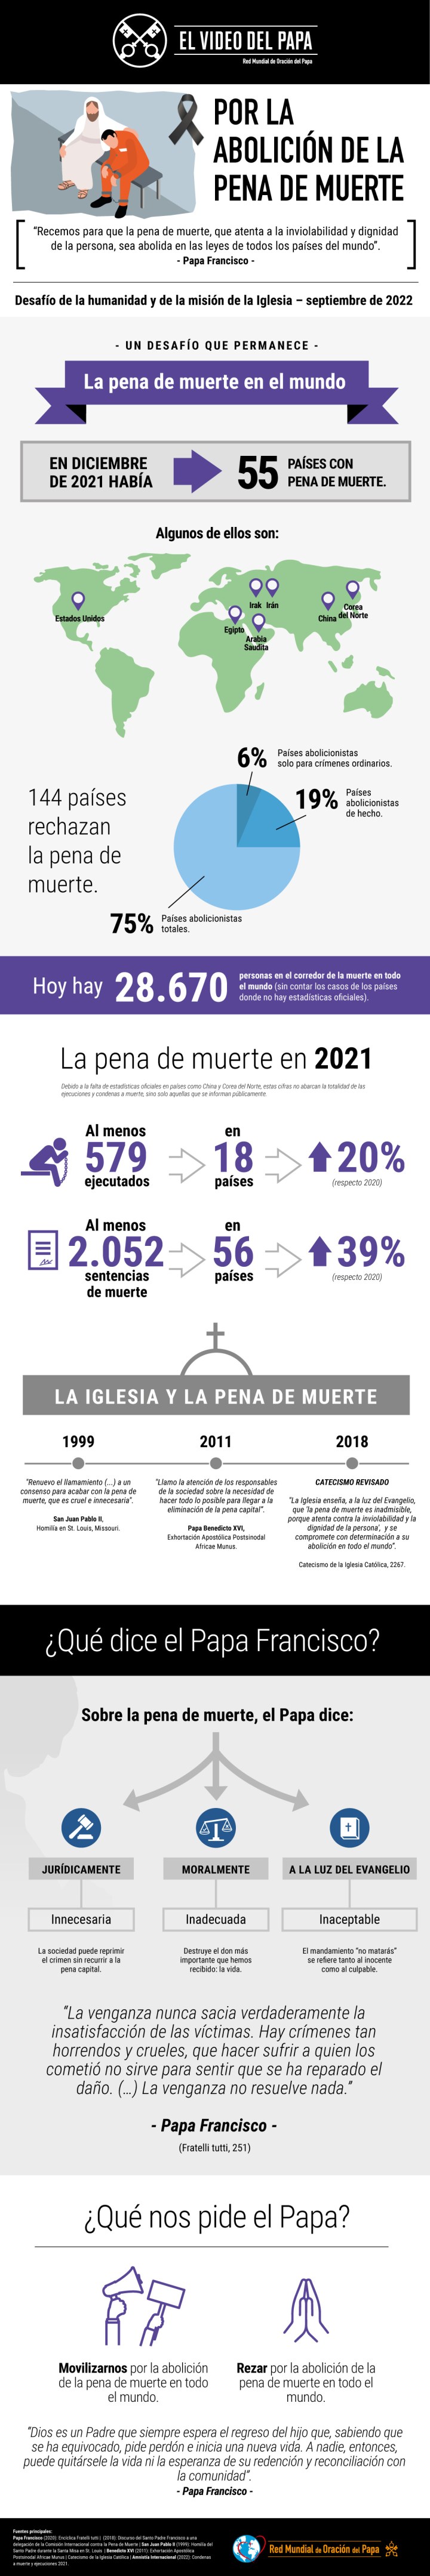 Infographic-TPV-9-2022-ES-Por-la-abolición-de-la-pena-de-muerte.jpg